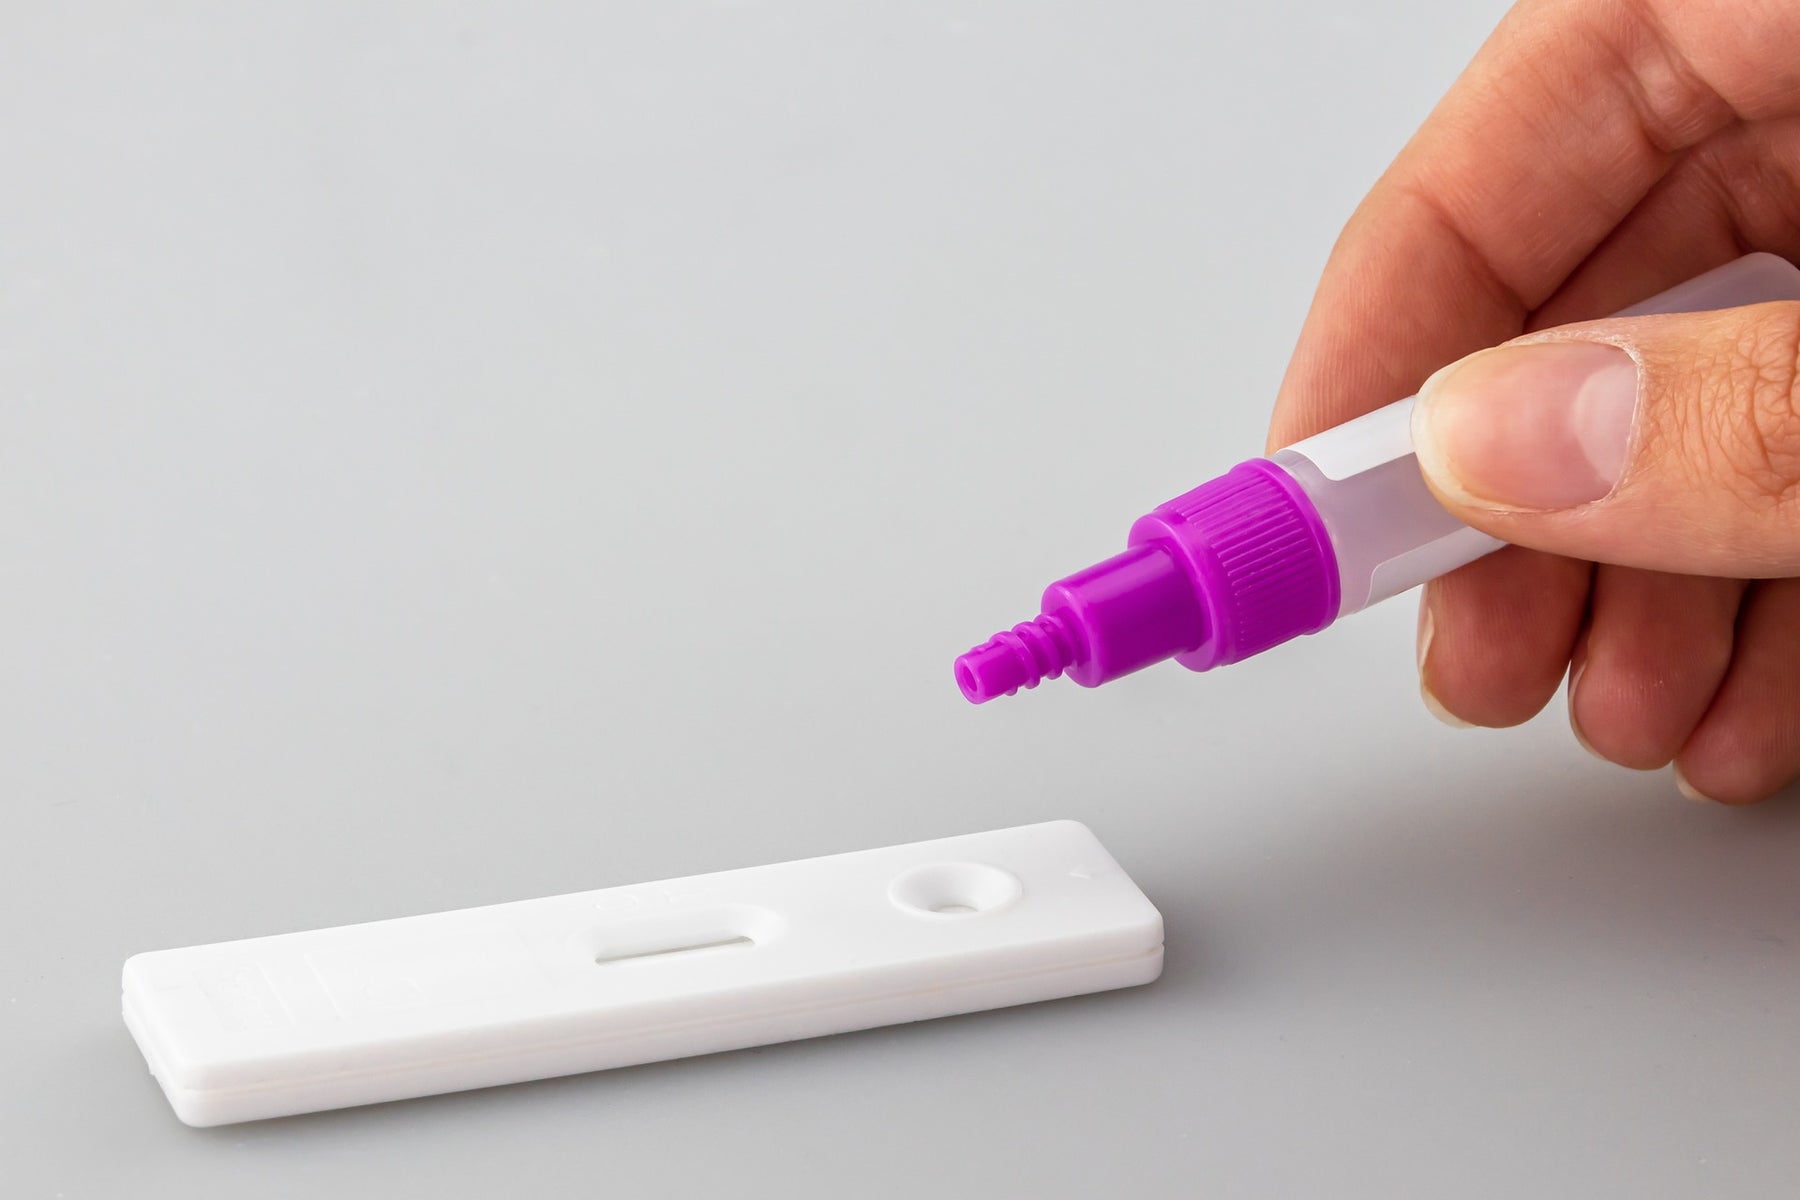 Entdecken Sie die Vorteile von Cleartest® Chlamydien: schnell, genau und privat